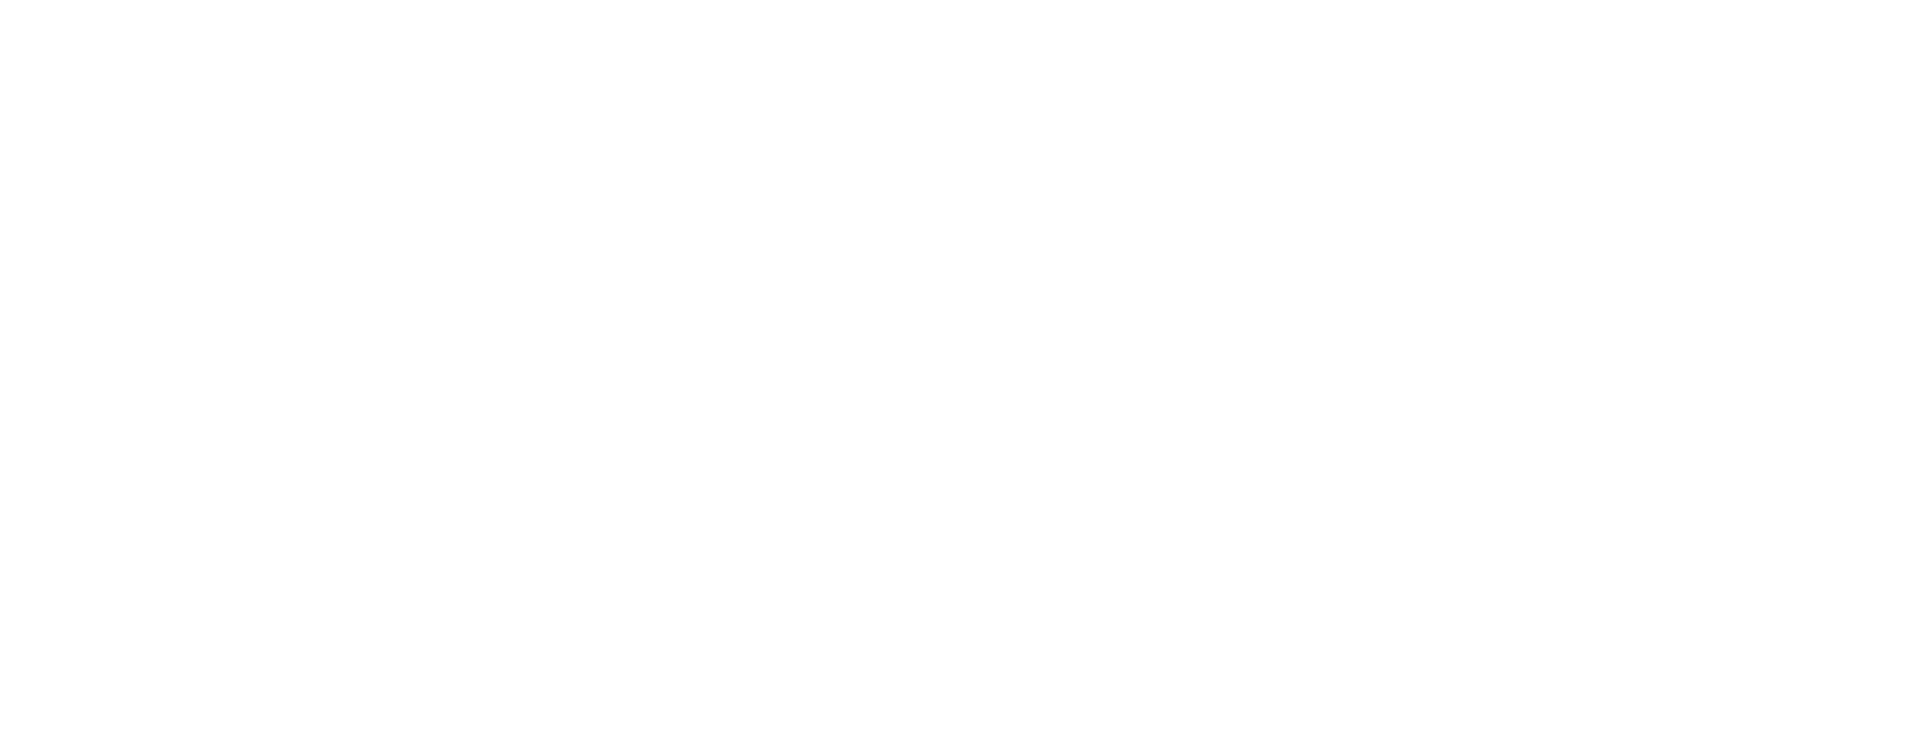 Super Smash Bros logo